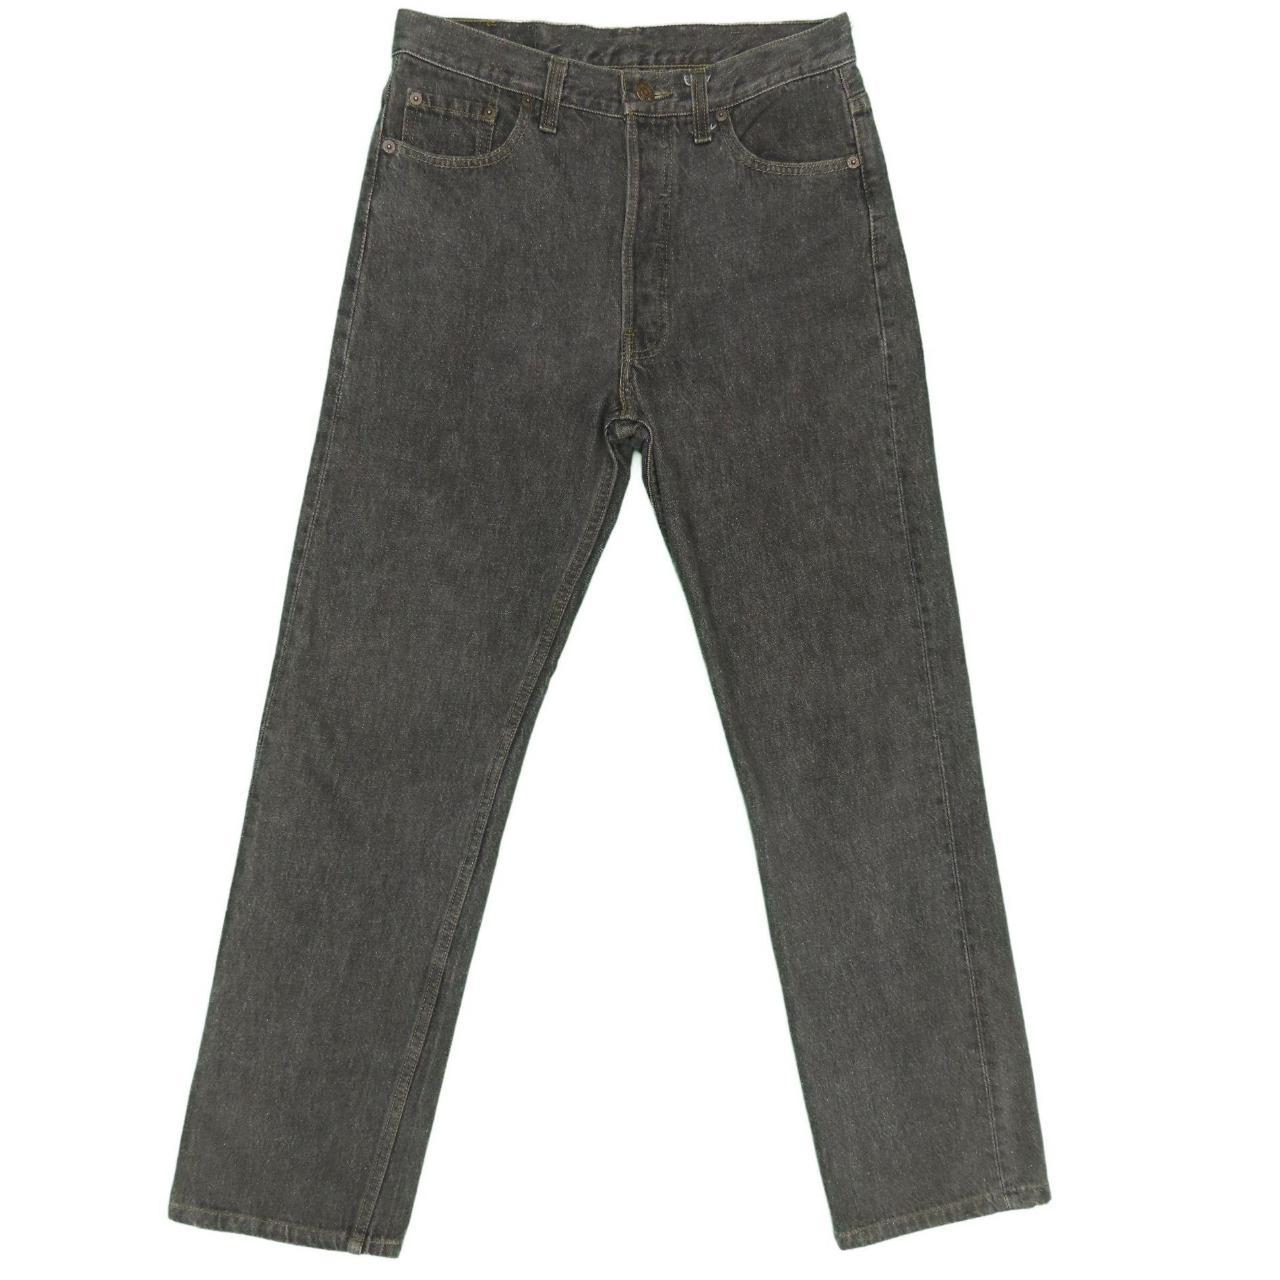 1990s Vintage Levis 501 Pebble Black Jeans... - Depop